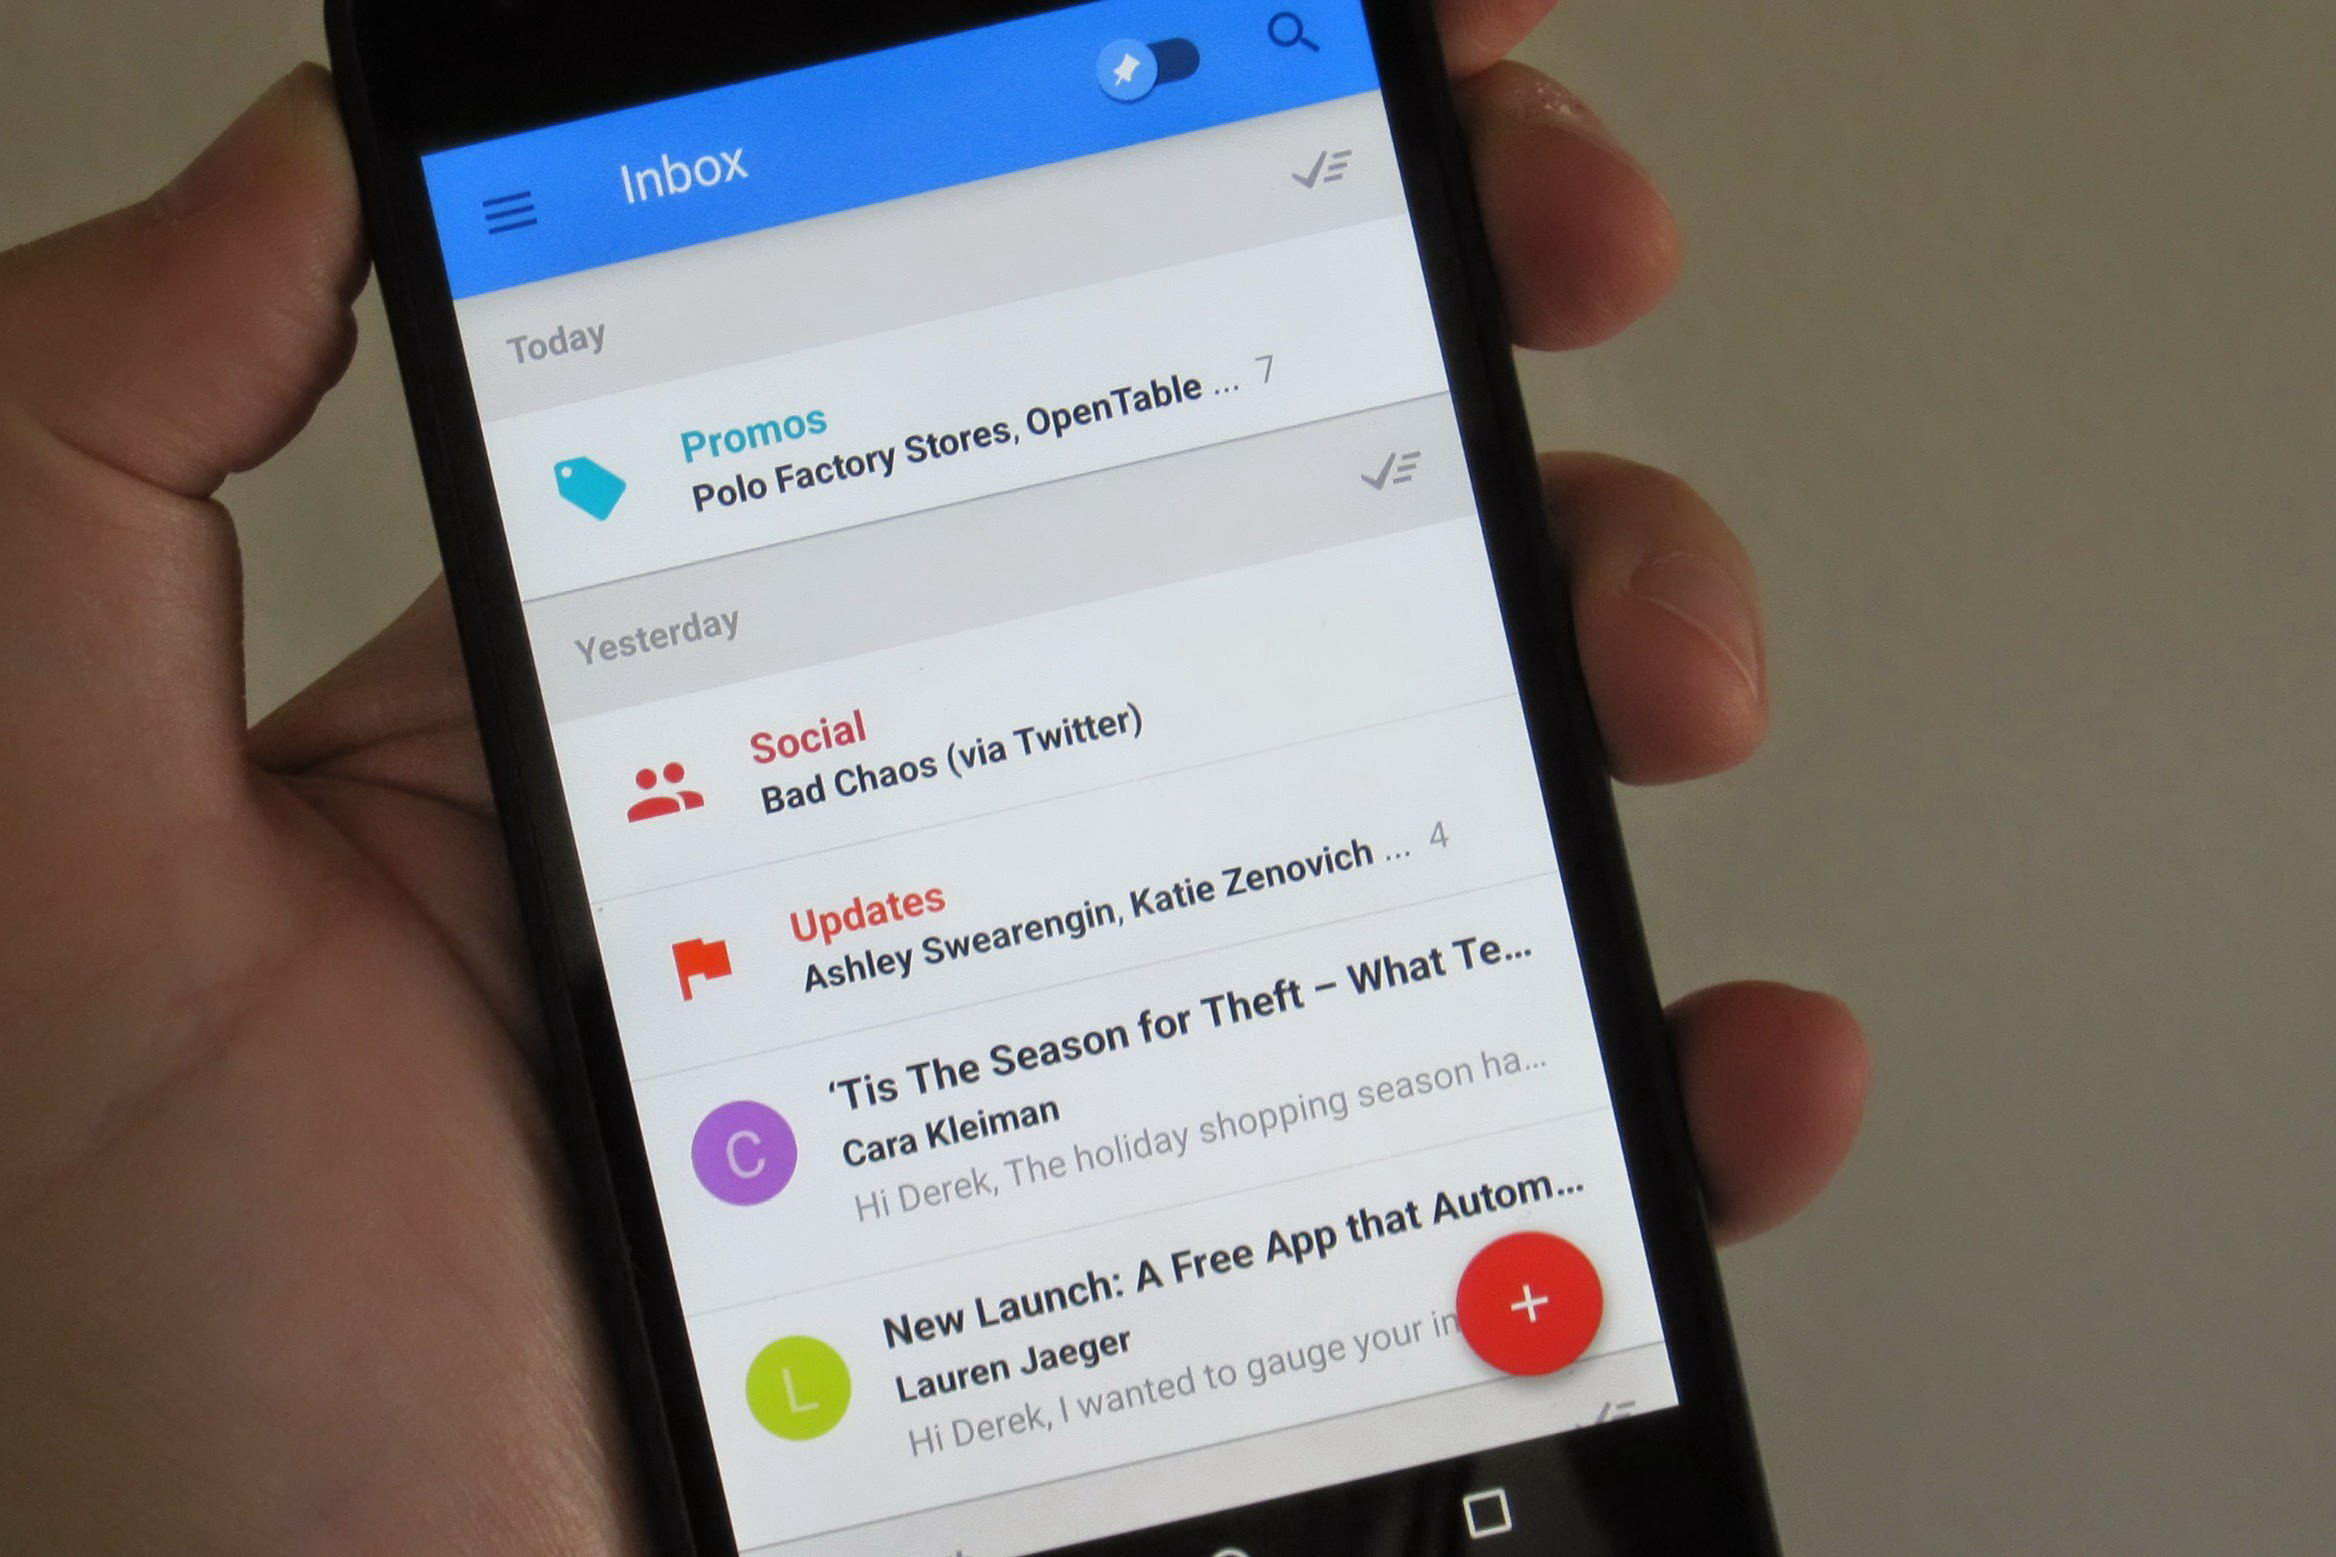 Tips Menggunakan Aplikasi Email Bawaan Pada Smartphone Android